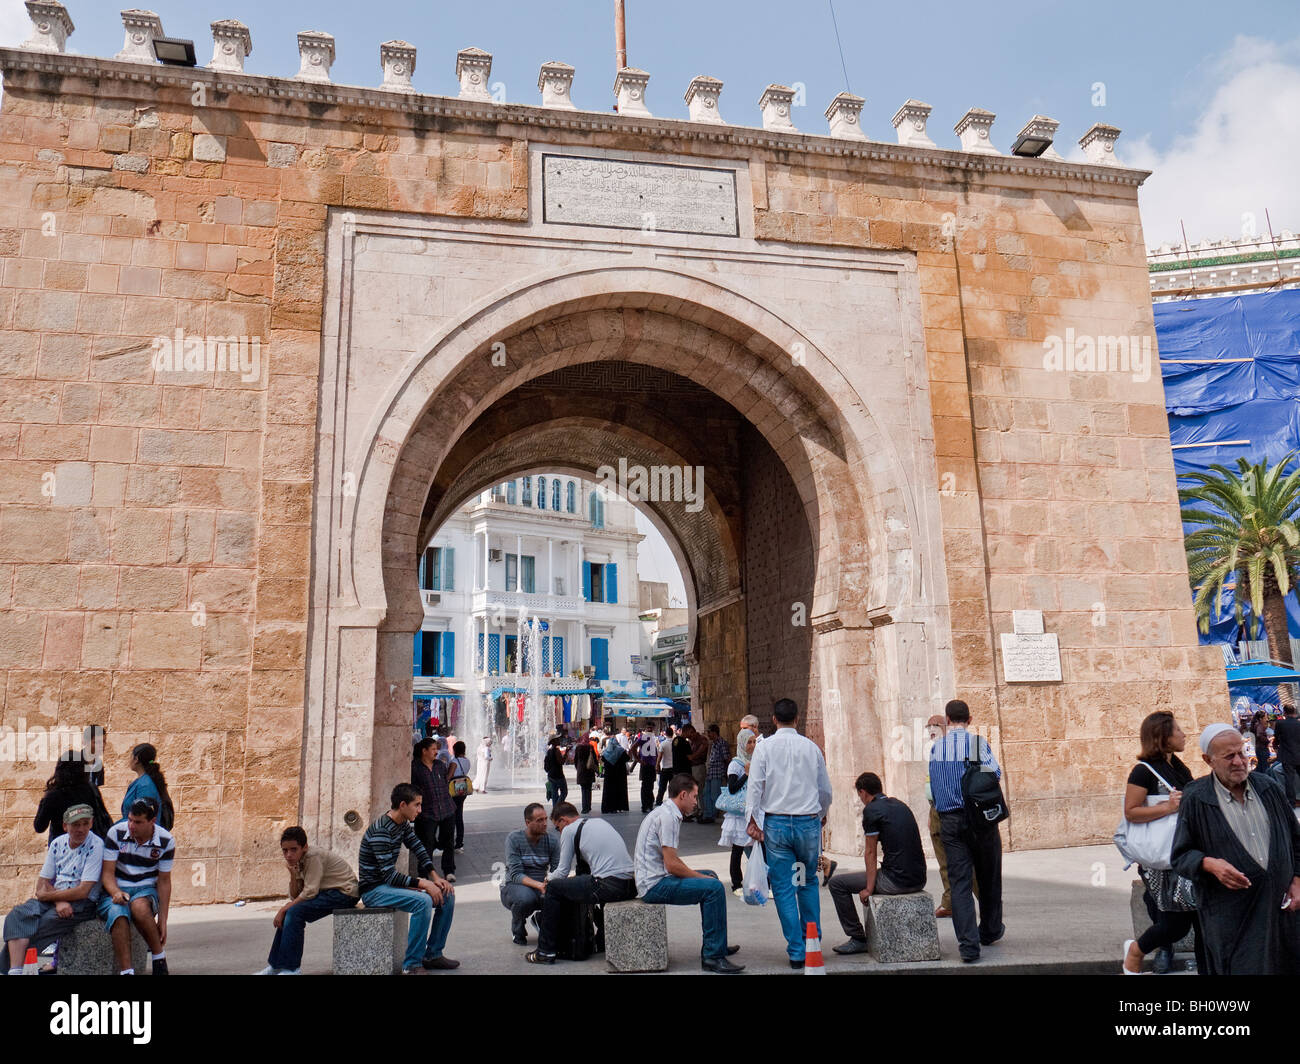 Sea or French Gate entrance to Medina Souk, Tunis, Tunisia Stock Photo